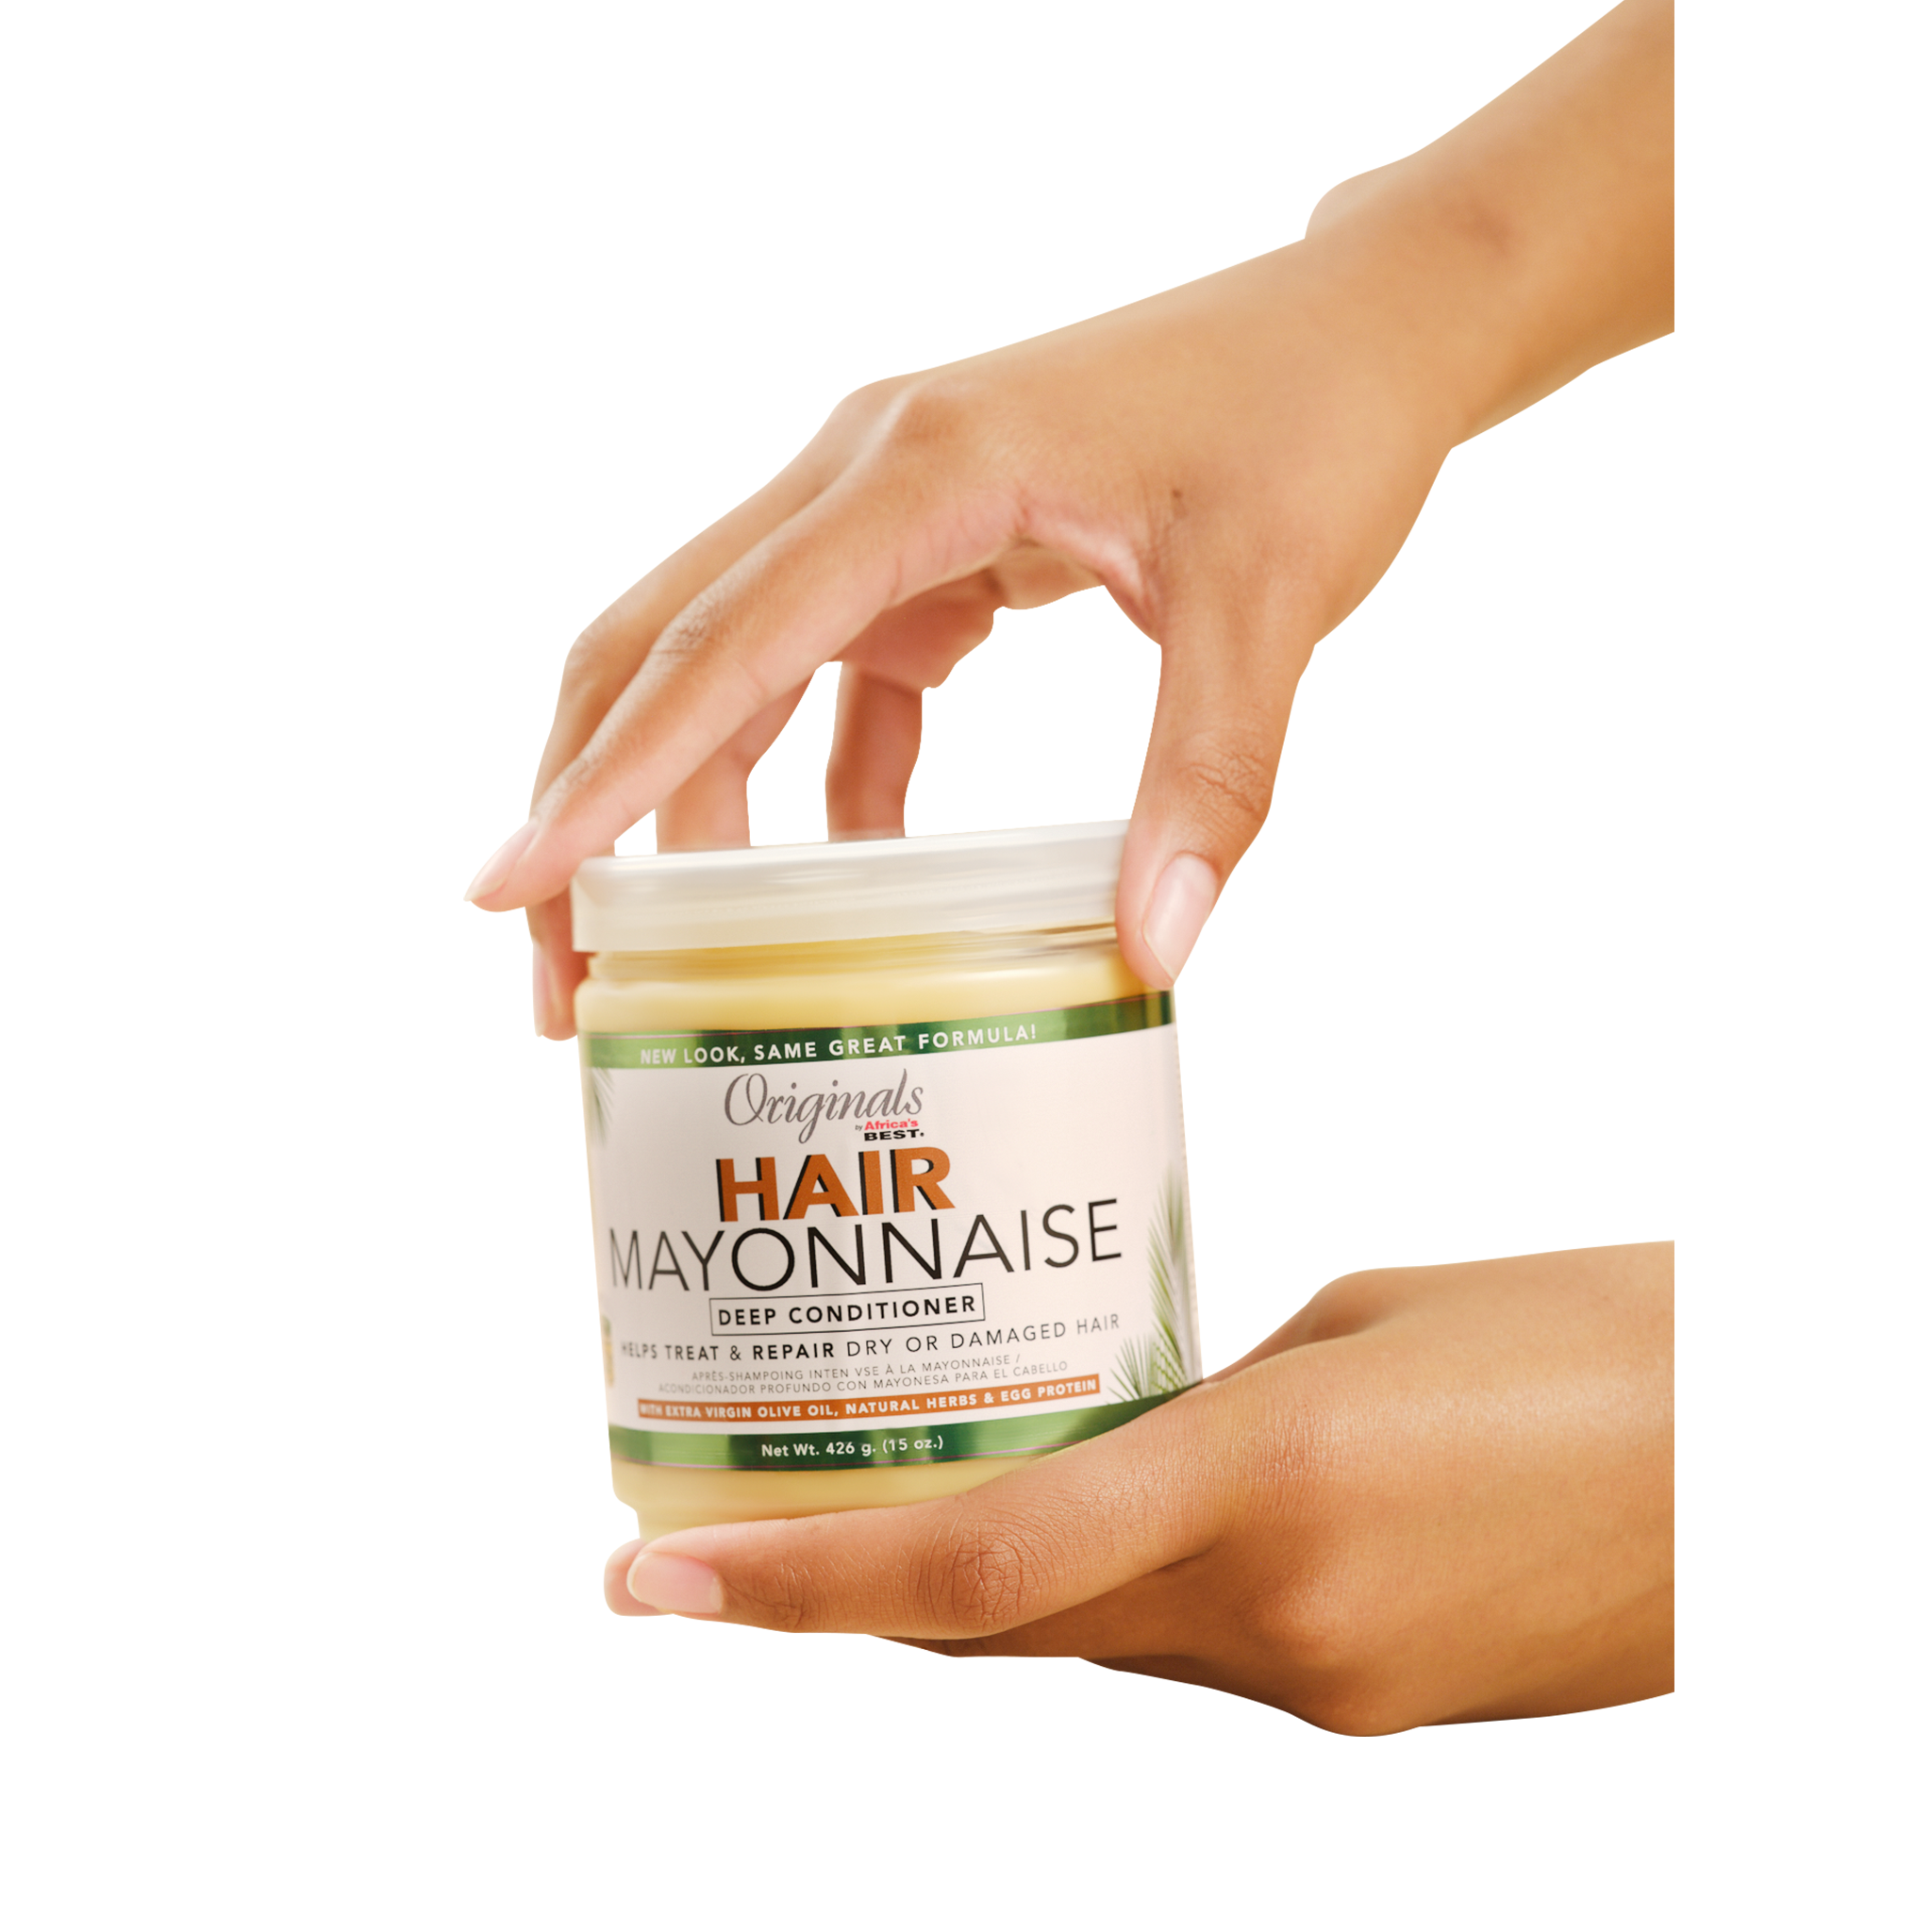 Africa's Best Organics Hair Mayonnaise 